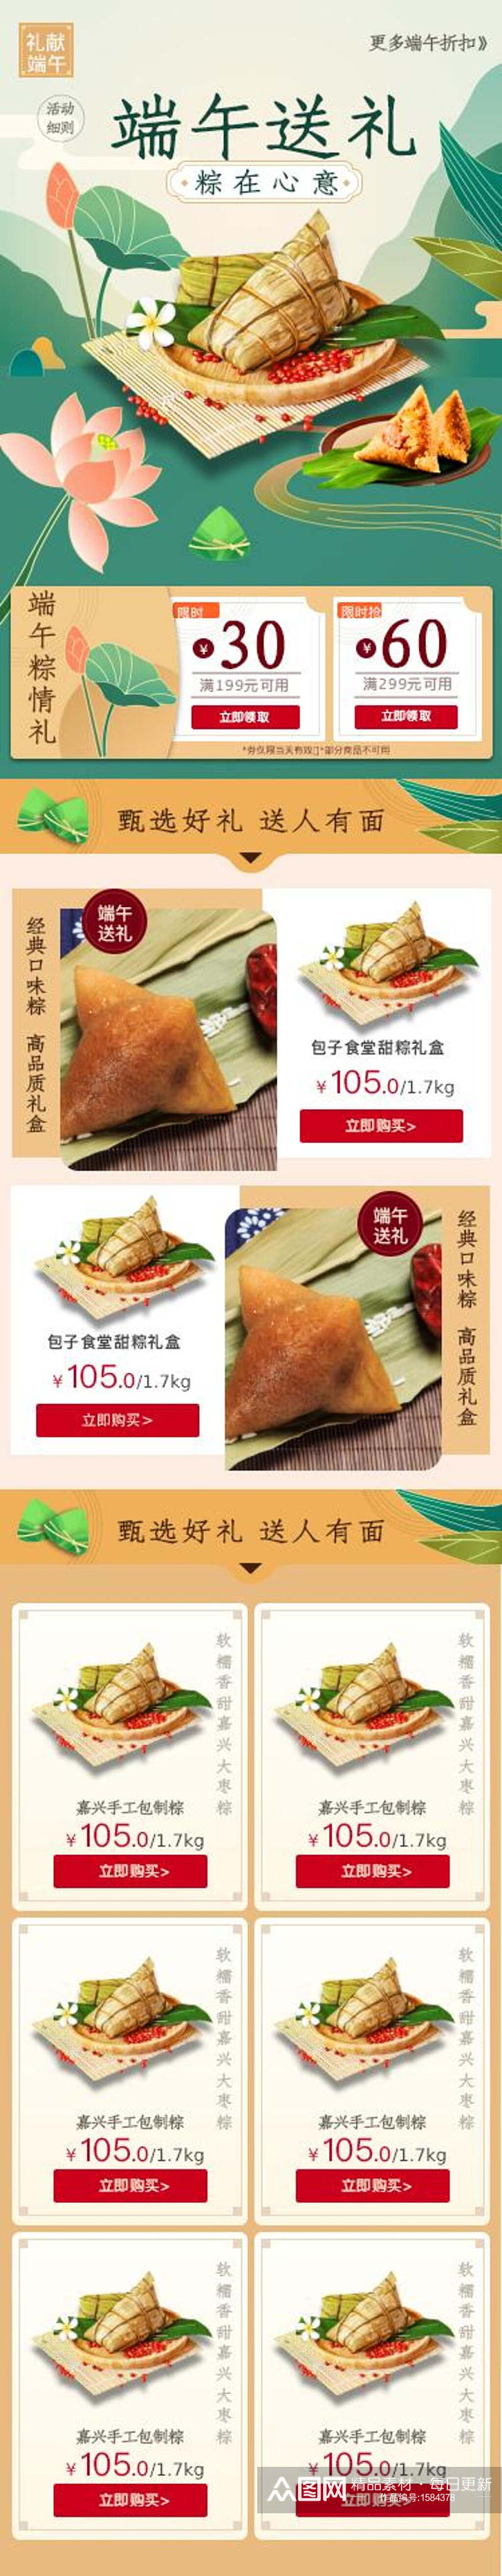 国潮端午节粽子宣传H5长图素材